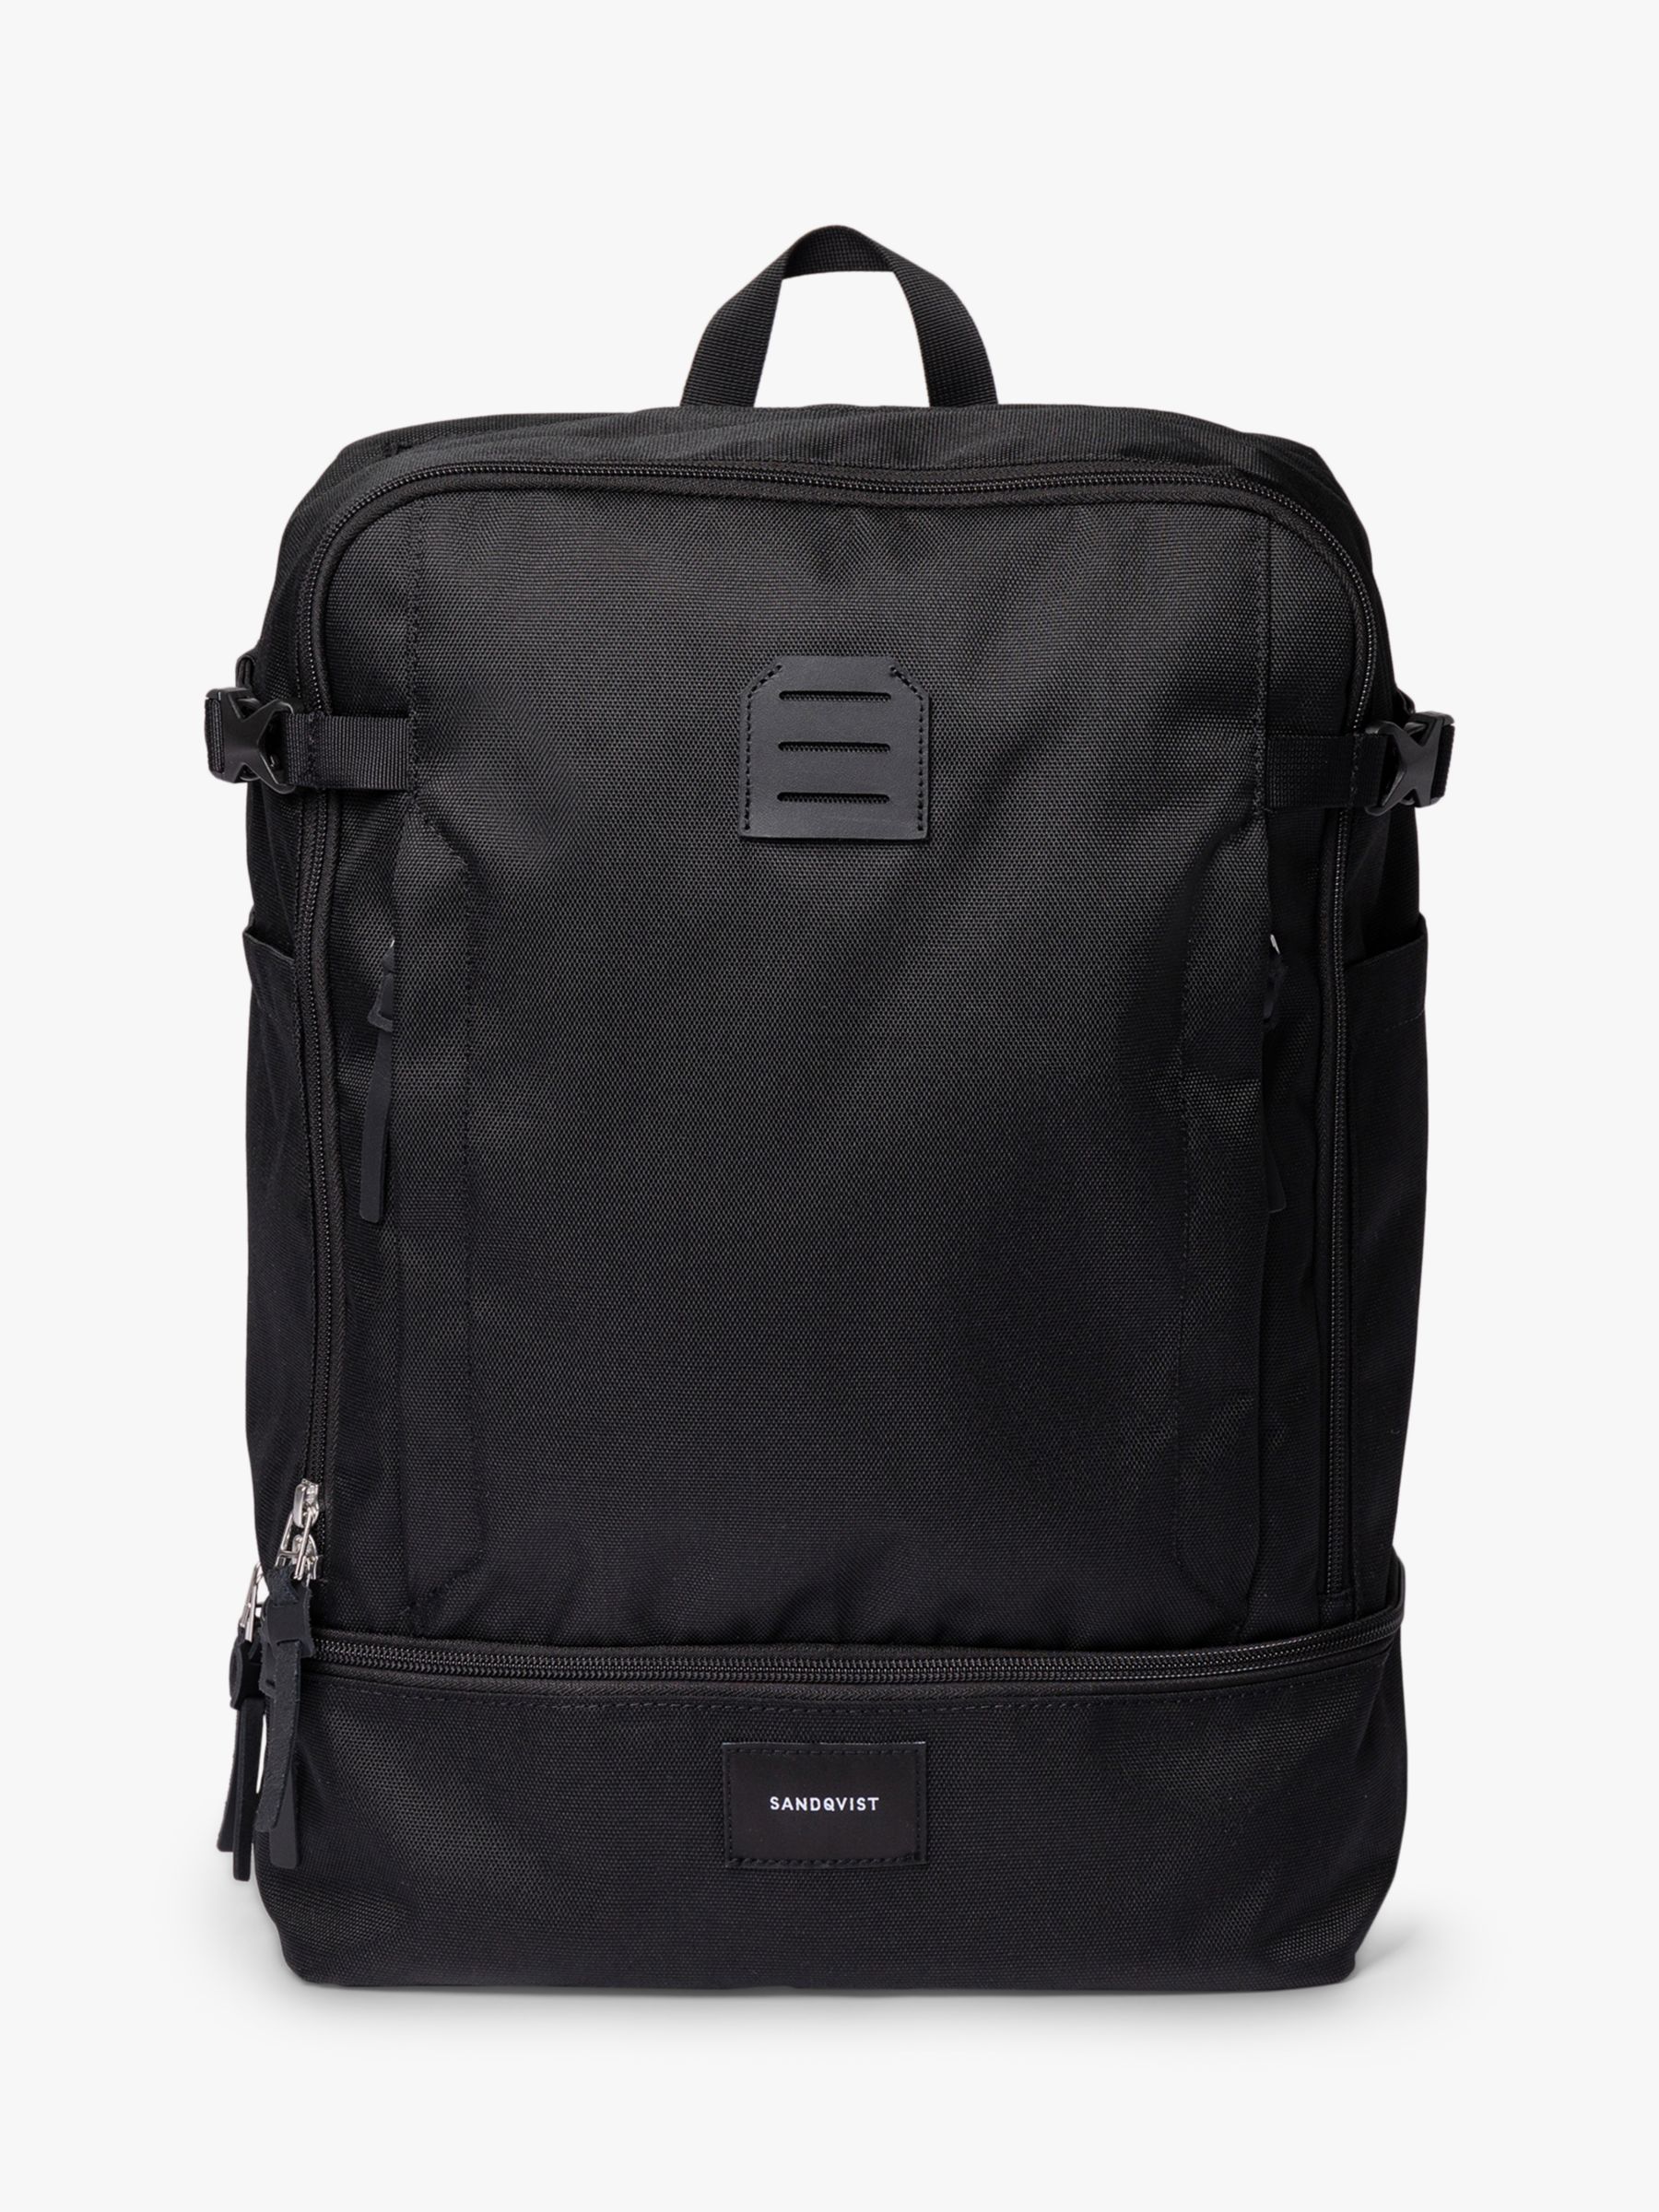 Рюкзак Альде Sandqvist, черный мужской водонепроницаемый рюкзак из ткани оксфорд для ноутбука 16 дюймов